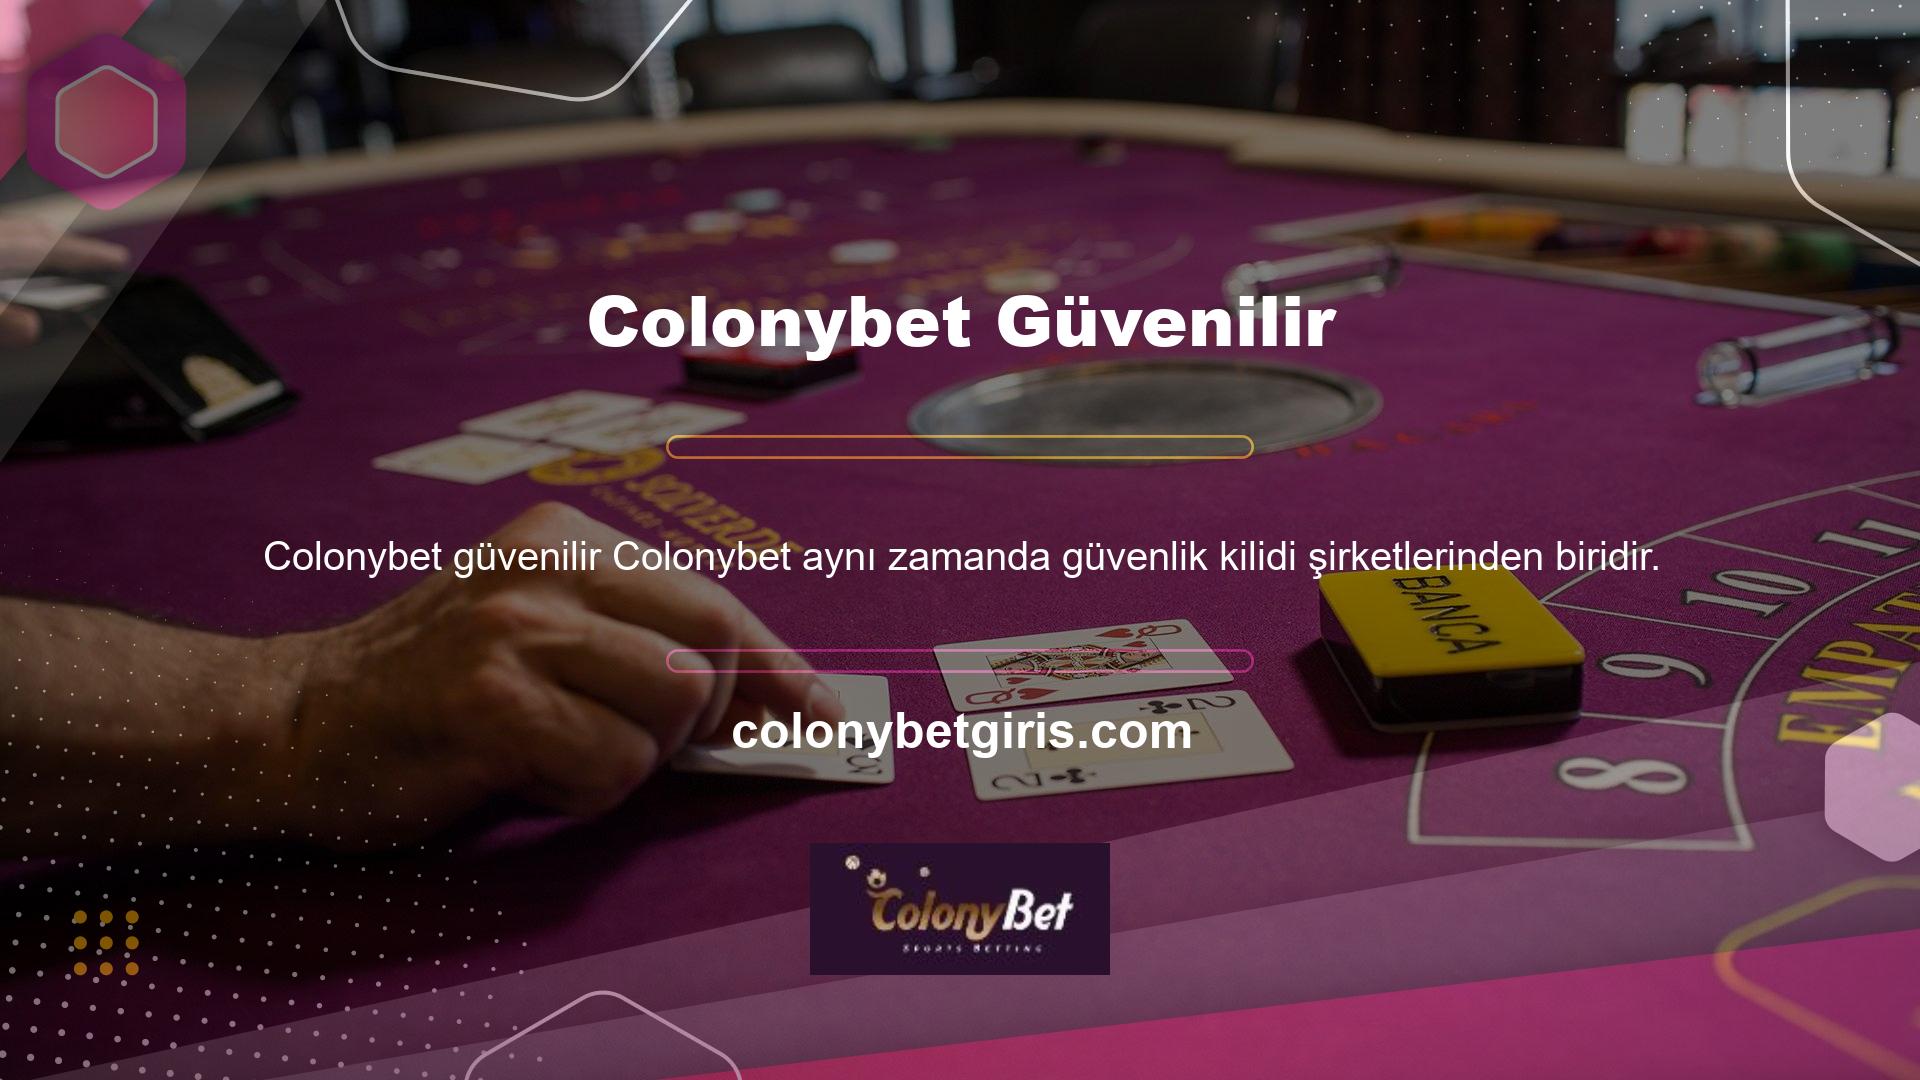 Colonybet, tüm Türk casino oyuncuları arasında en popüler ve güvenilir casino sitelerinden biridir